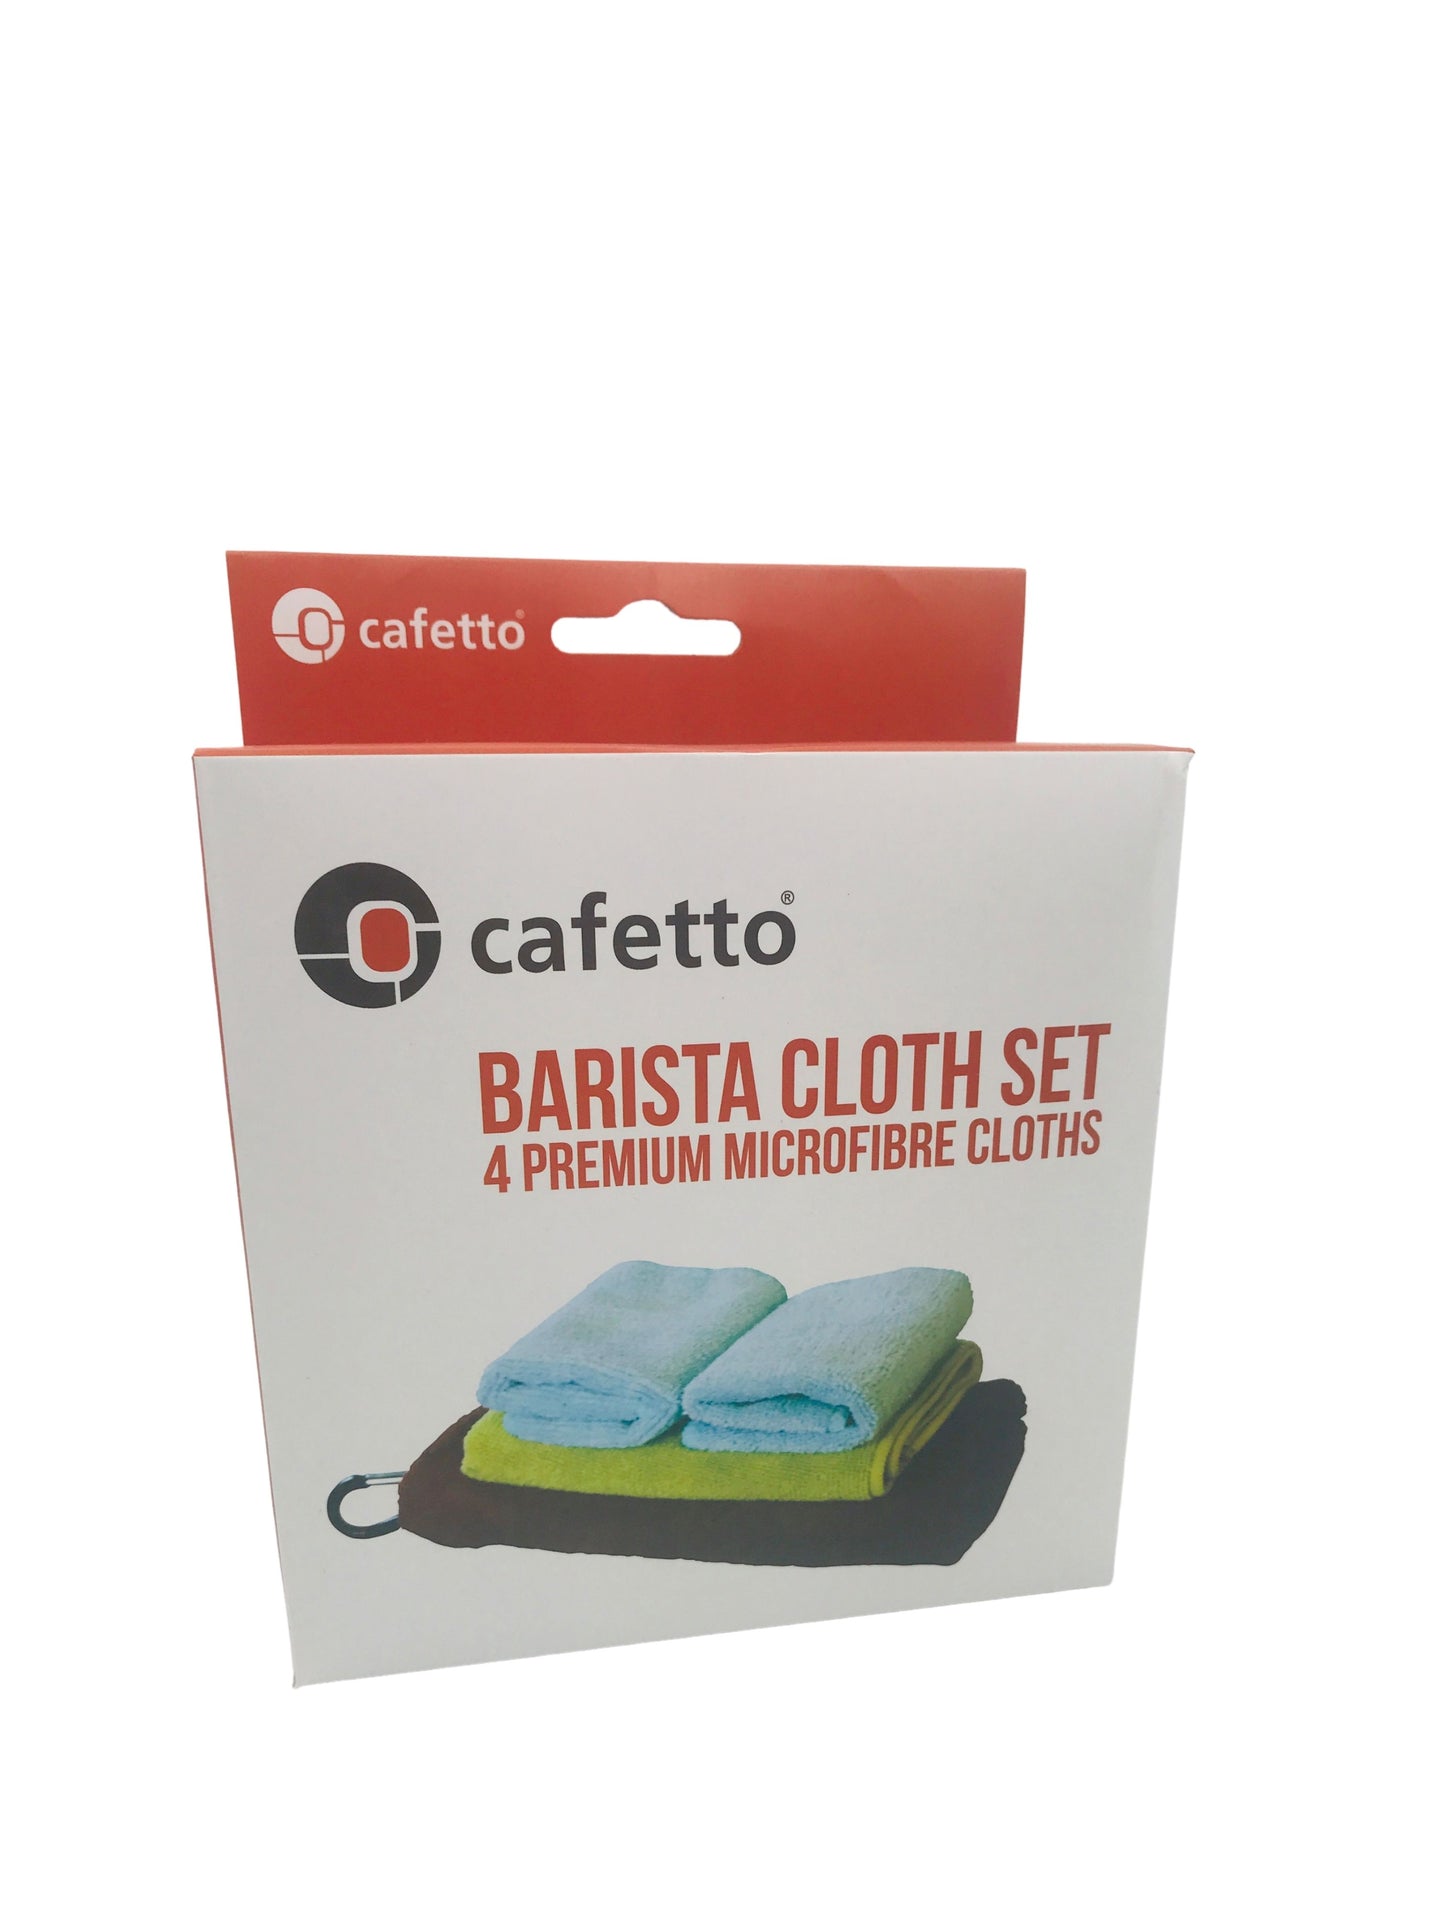 Barista Cloth Set – Store